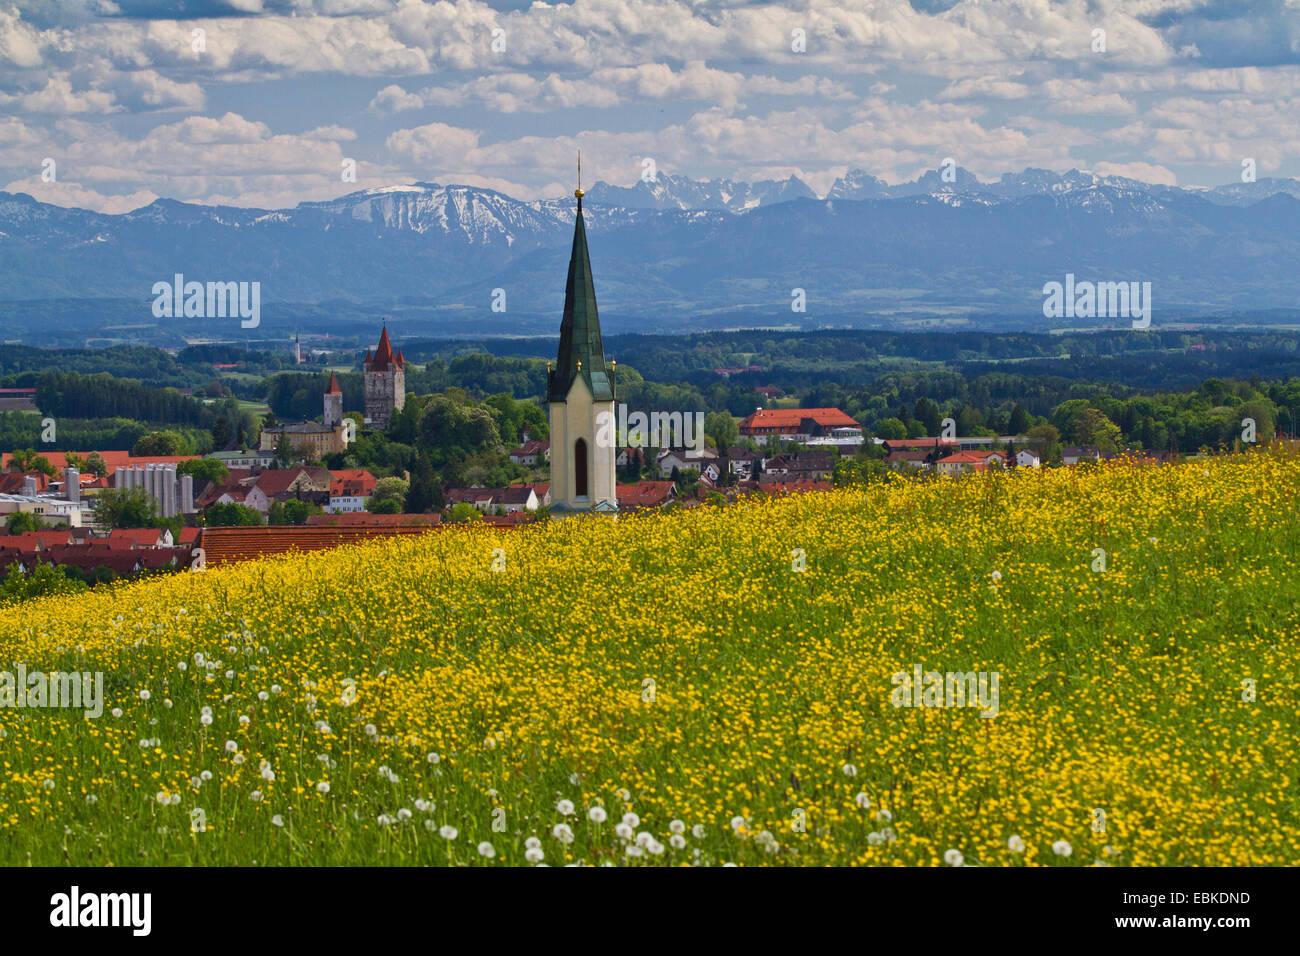 Faldas alpinas, vistas flor maedow, la iglesia y el castillo de los Alpes, Alemania, Baviera, Haag Foto de stock